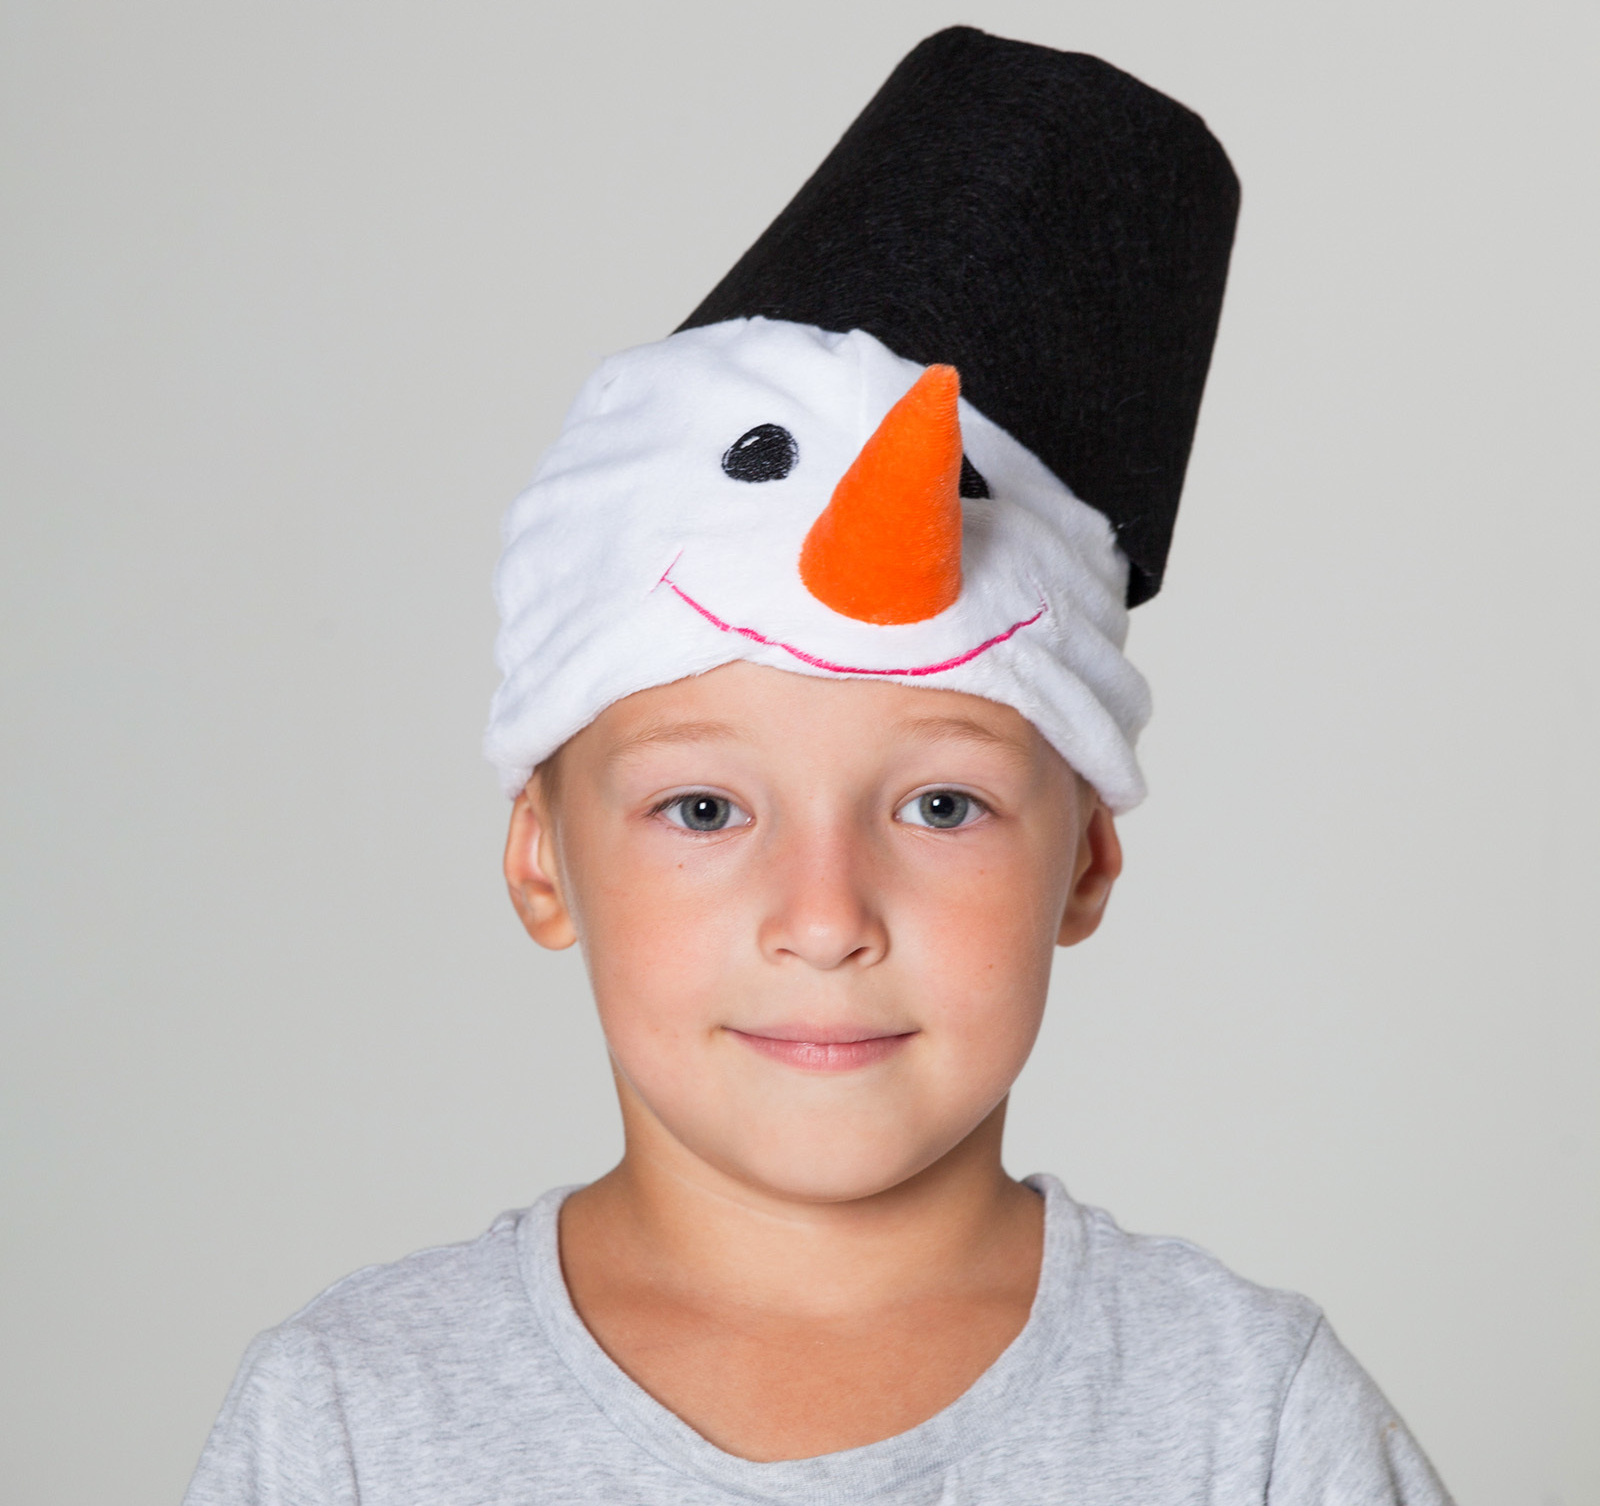 Шляпа для снеговика. Шапка Снеговик. Шапка снеговика для мальчика. Головной убор снеговика. Карнавальная шапка снеговика.